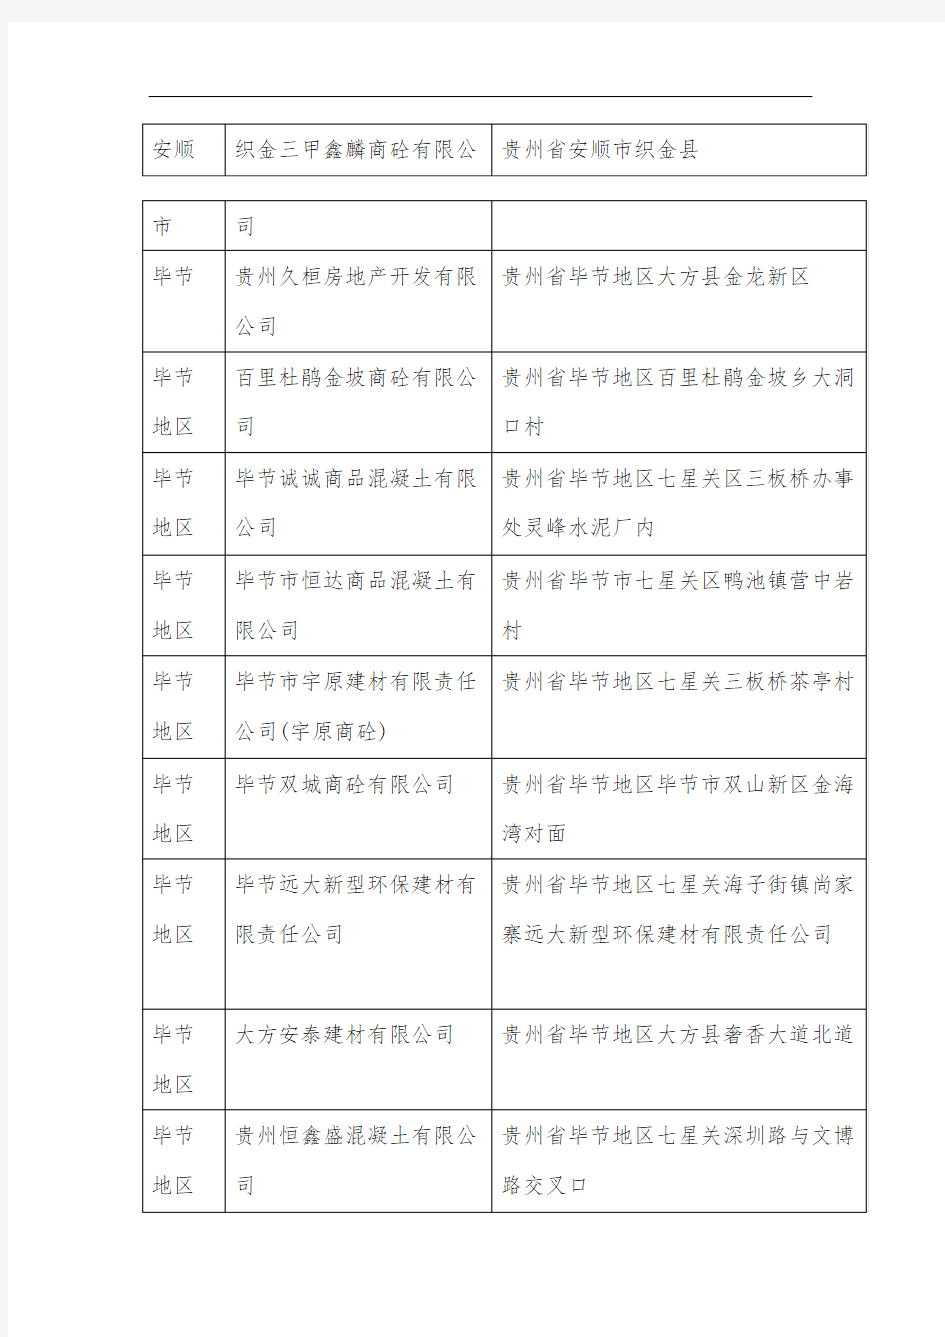 贵州省商品混凝土企业名录